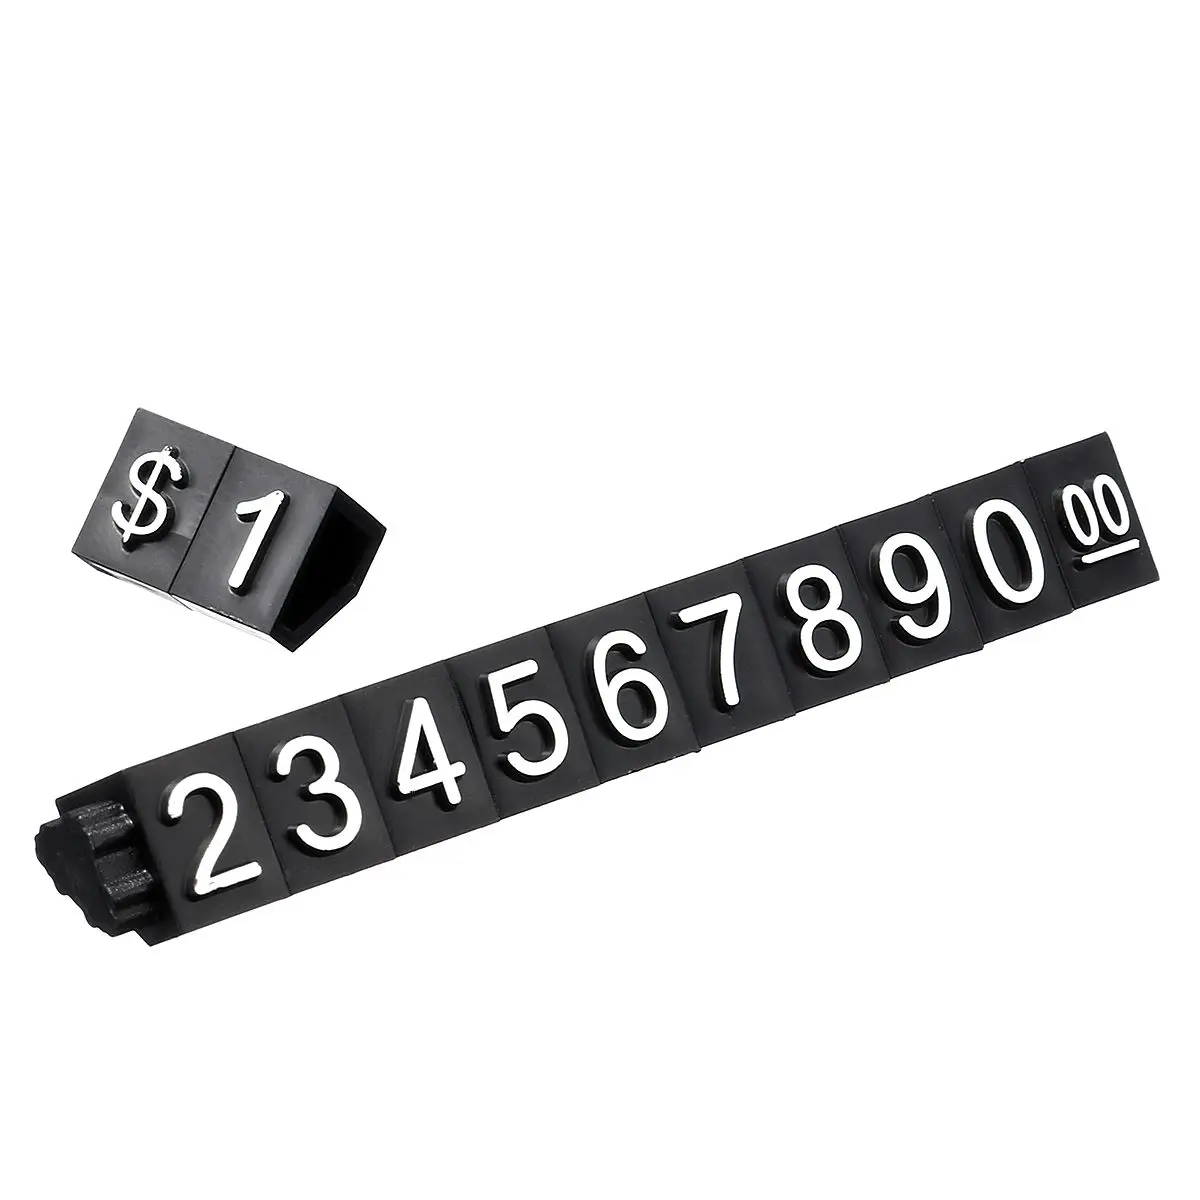 30 шт. ценник доллар кубики с цифрами монтажные блоки палка комбинированный номер значка знак часы ювелирные изделия Цена дисплей стенд